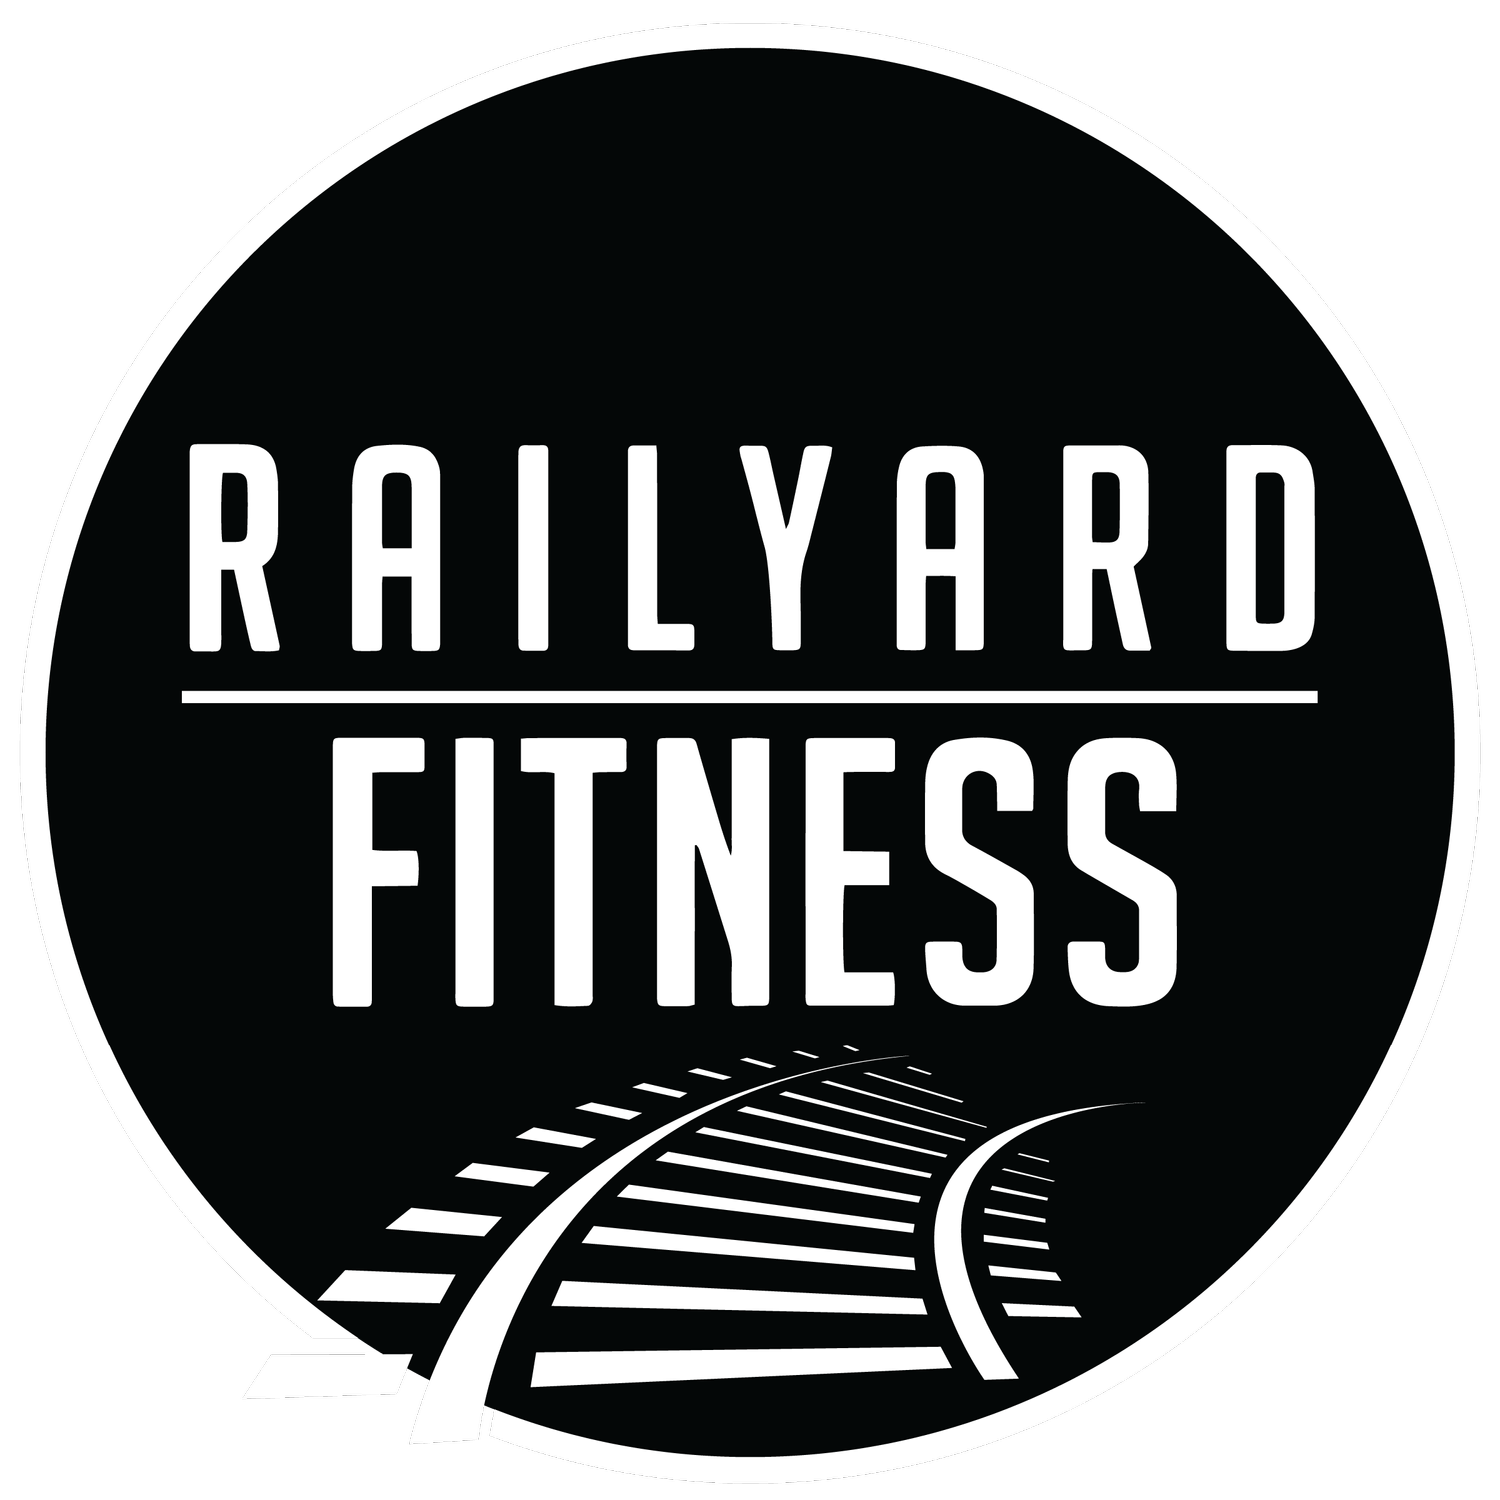 Railyard Fitness